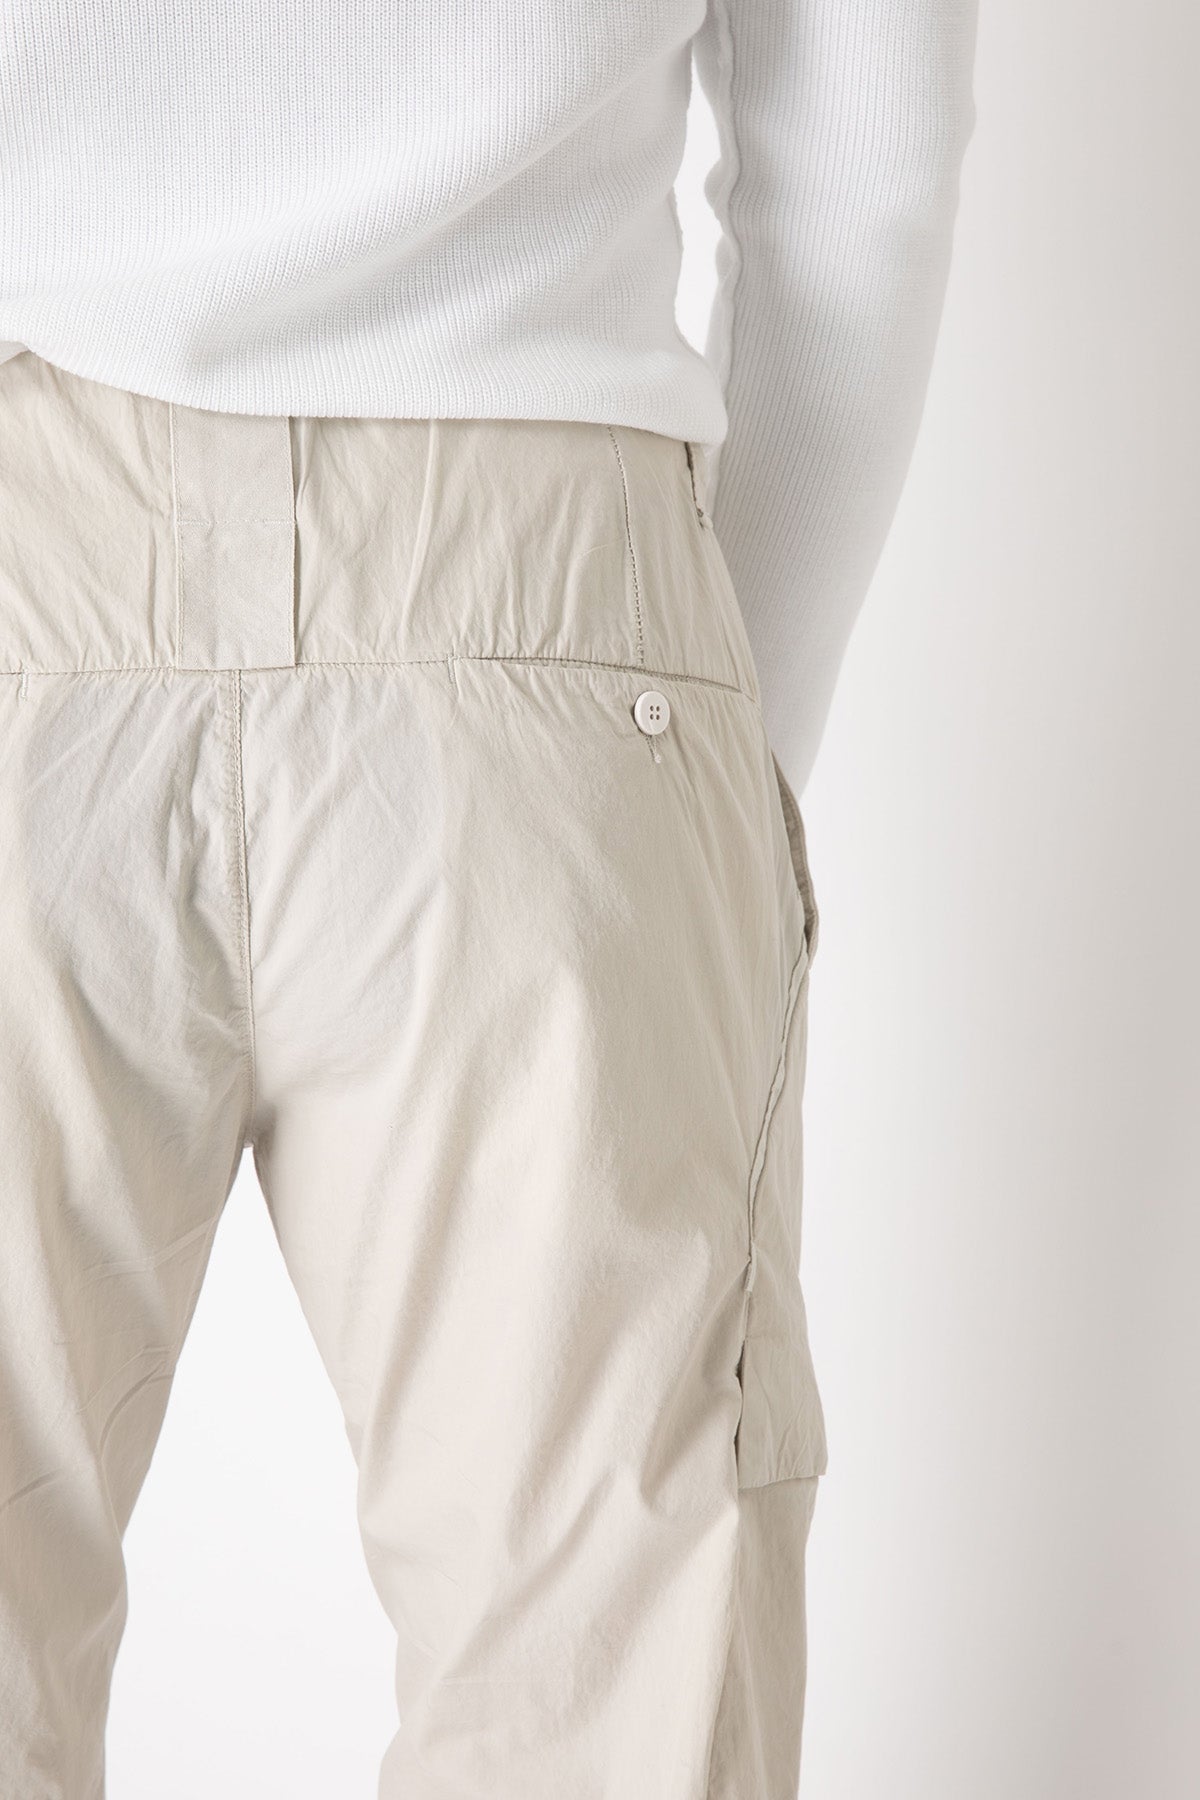 Transit Kargo Cep Detaylı Pantolon-Libas Trendy Fashion Store